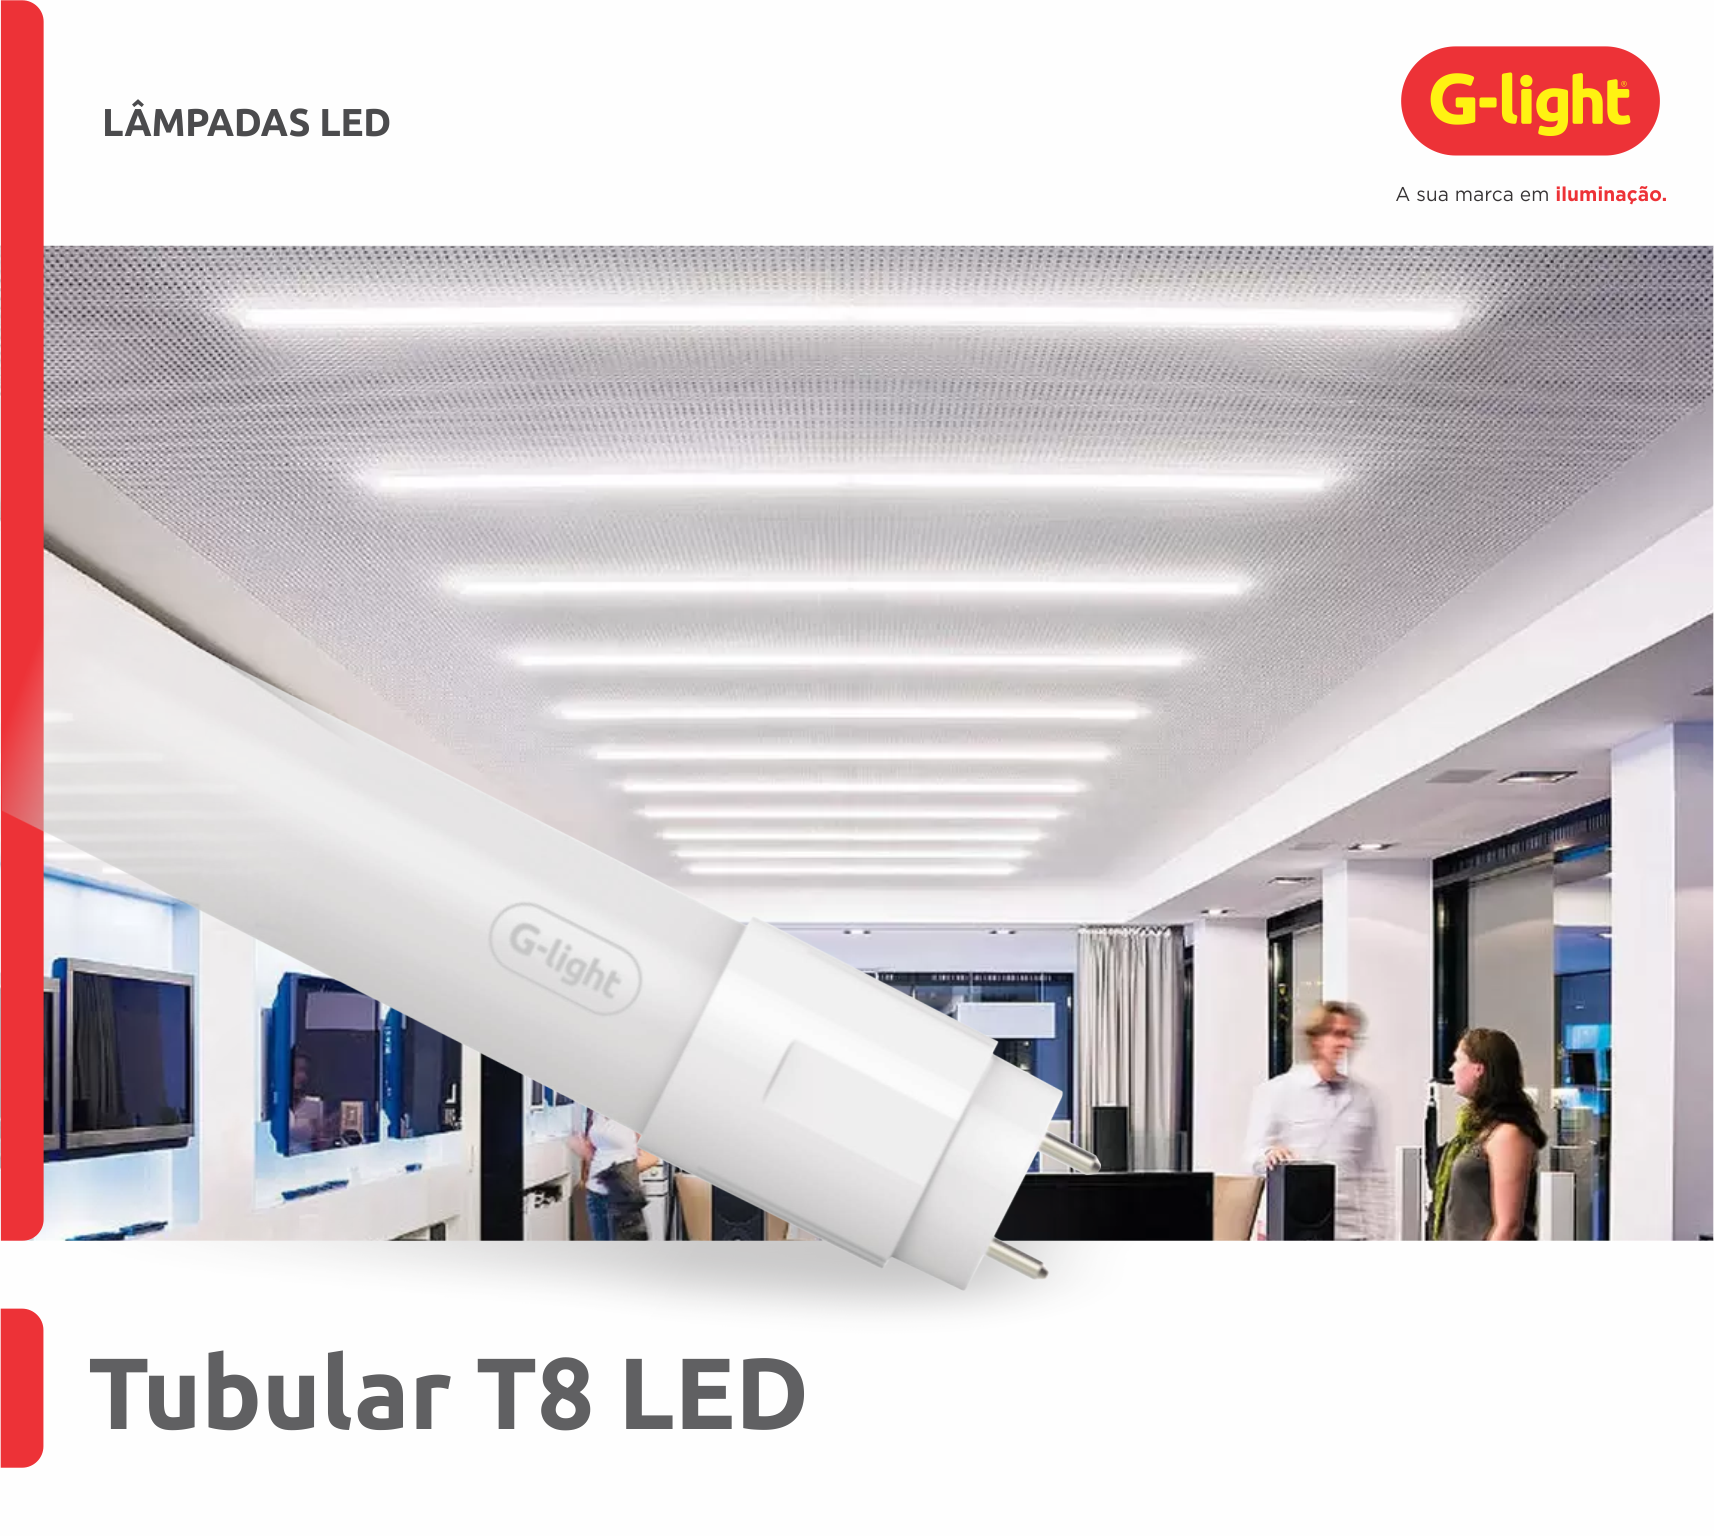 Tubular T8 LED